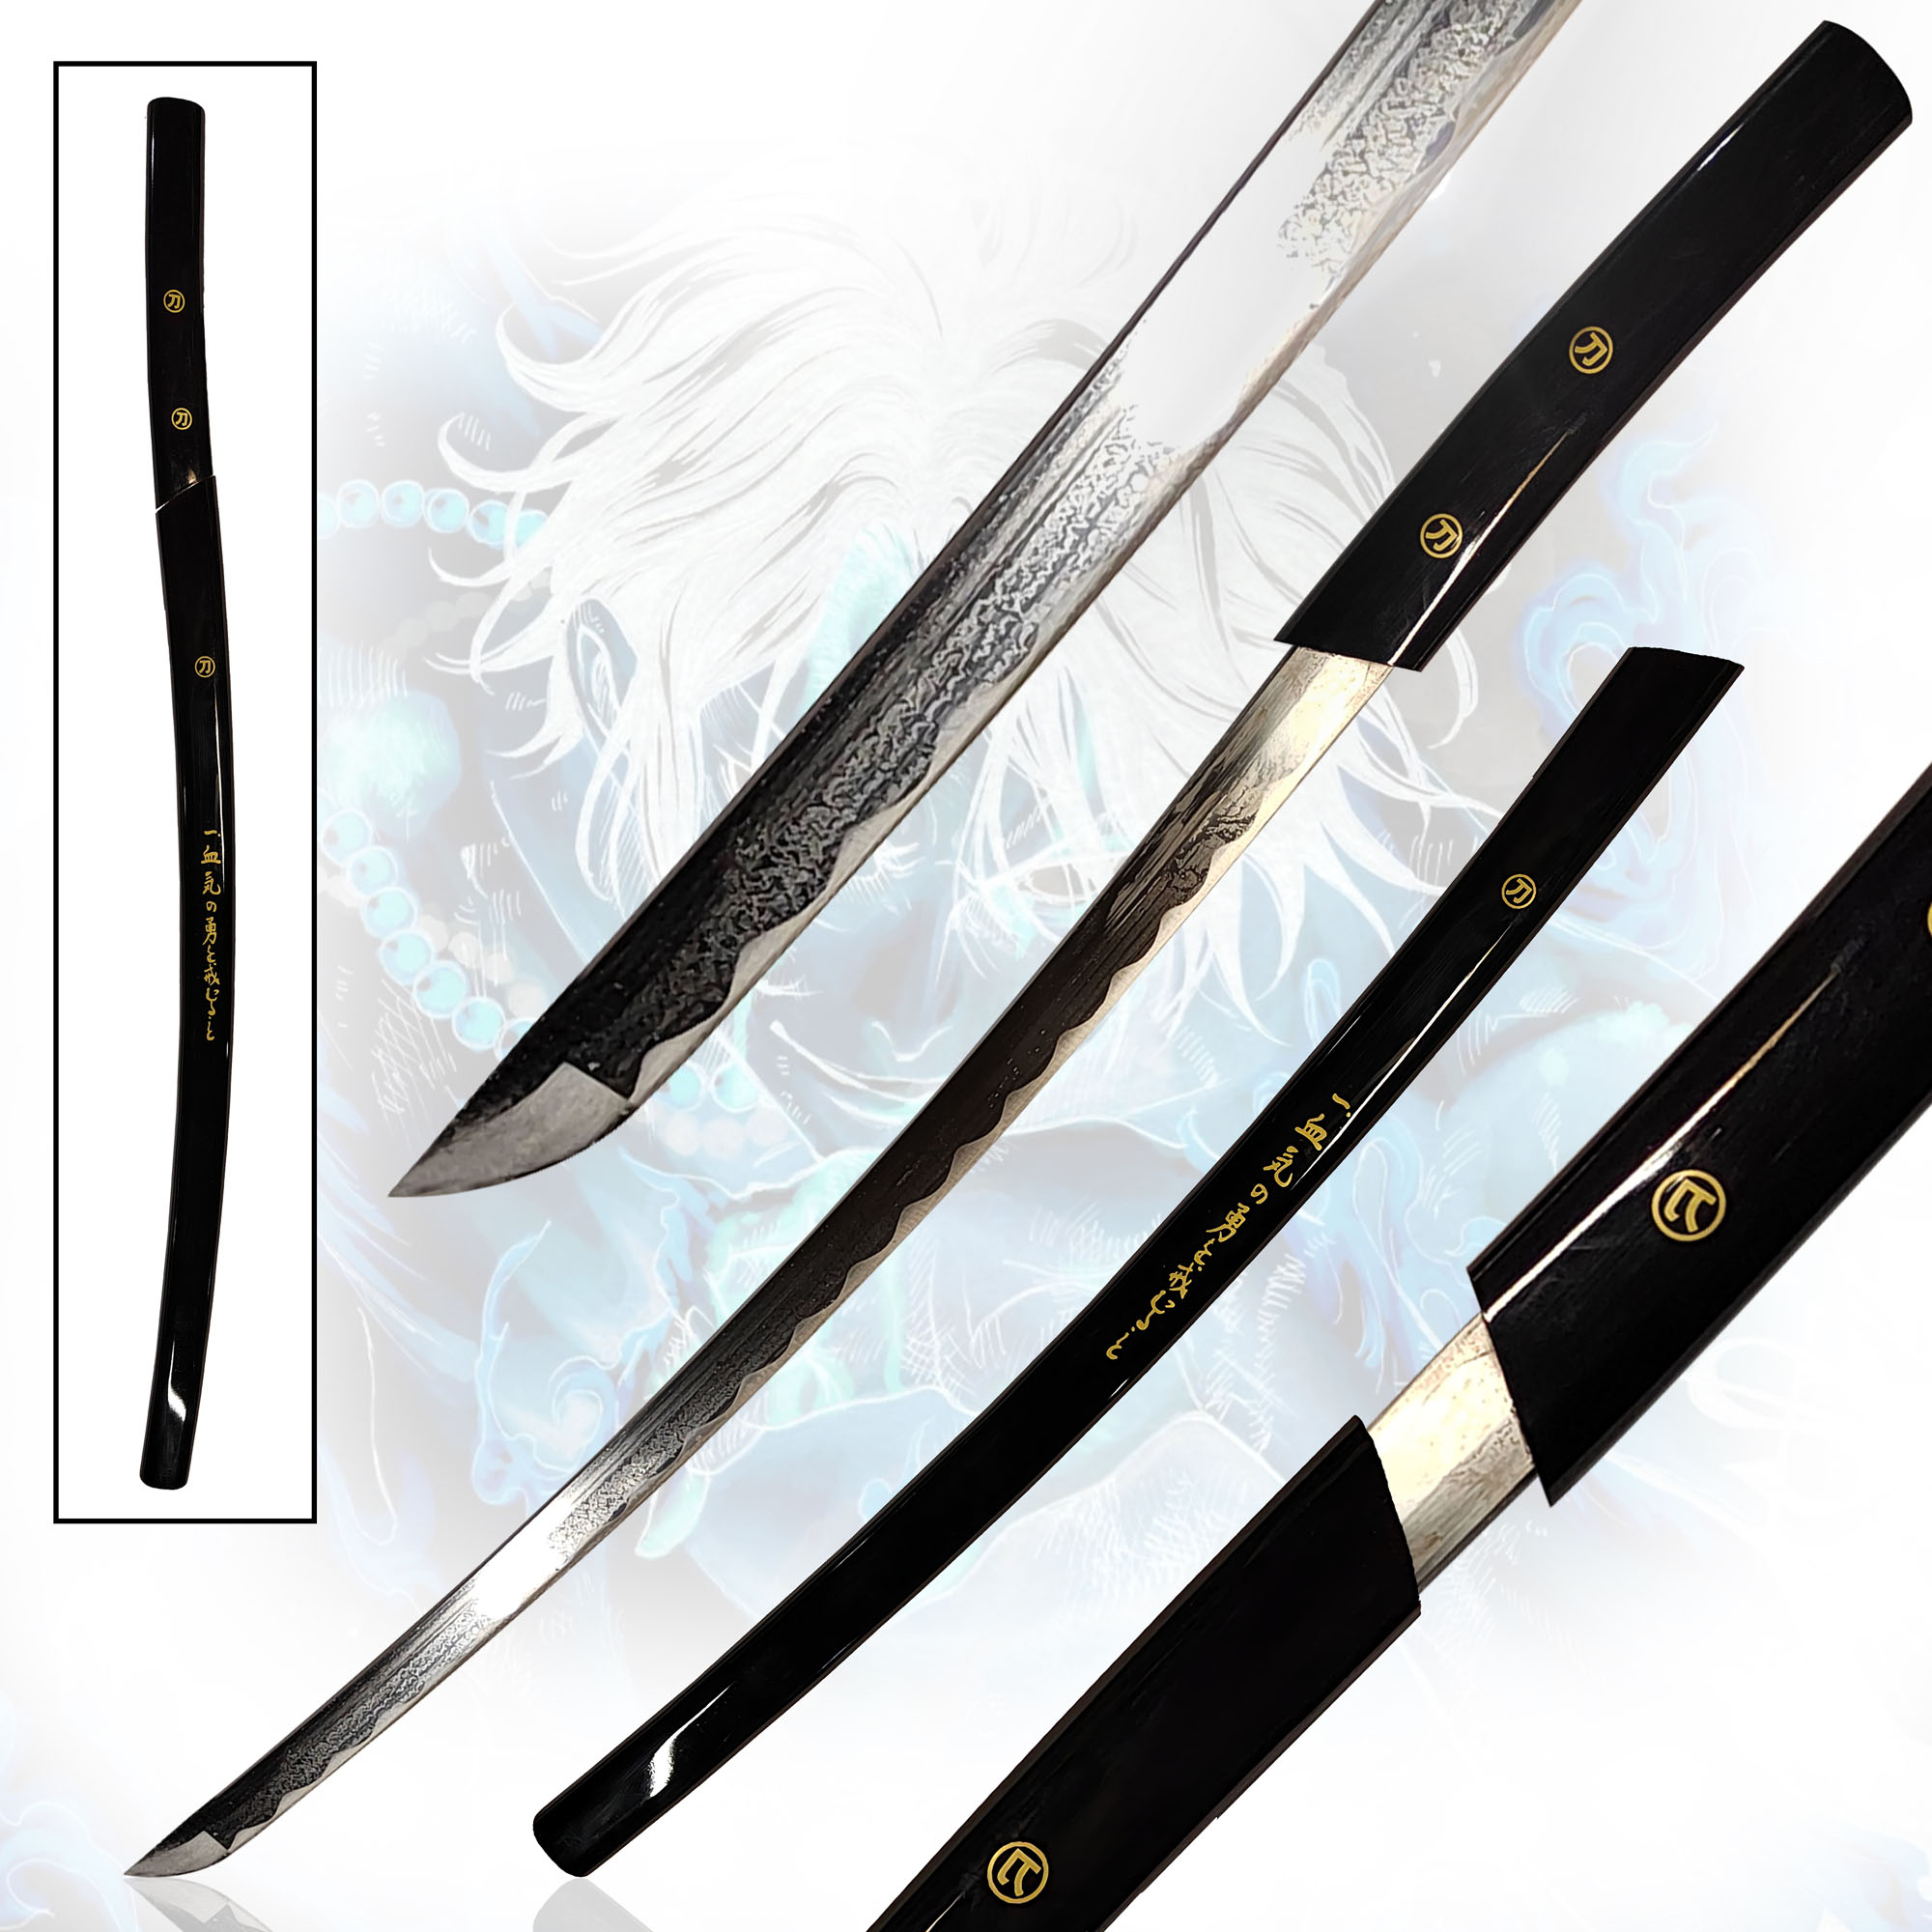 O Ren Ishii Sword, Handforged, Sharp Blade